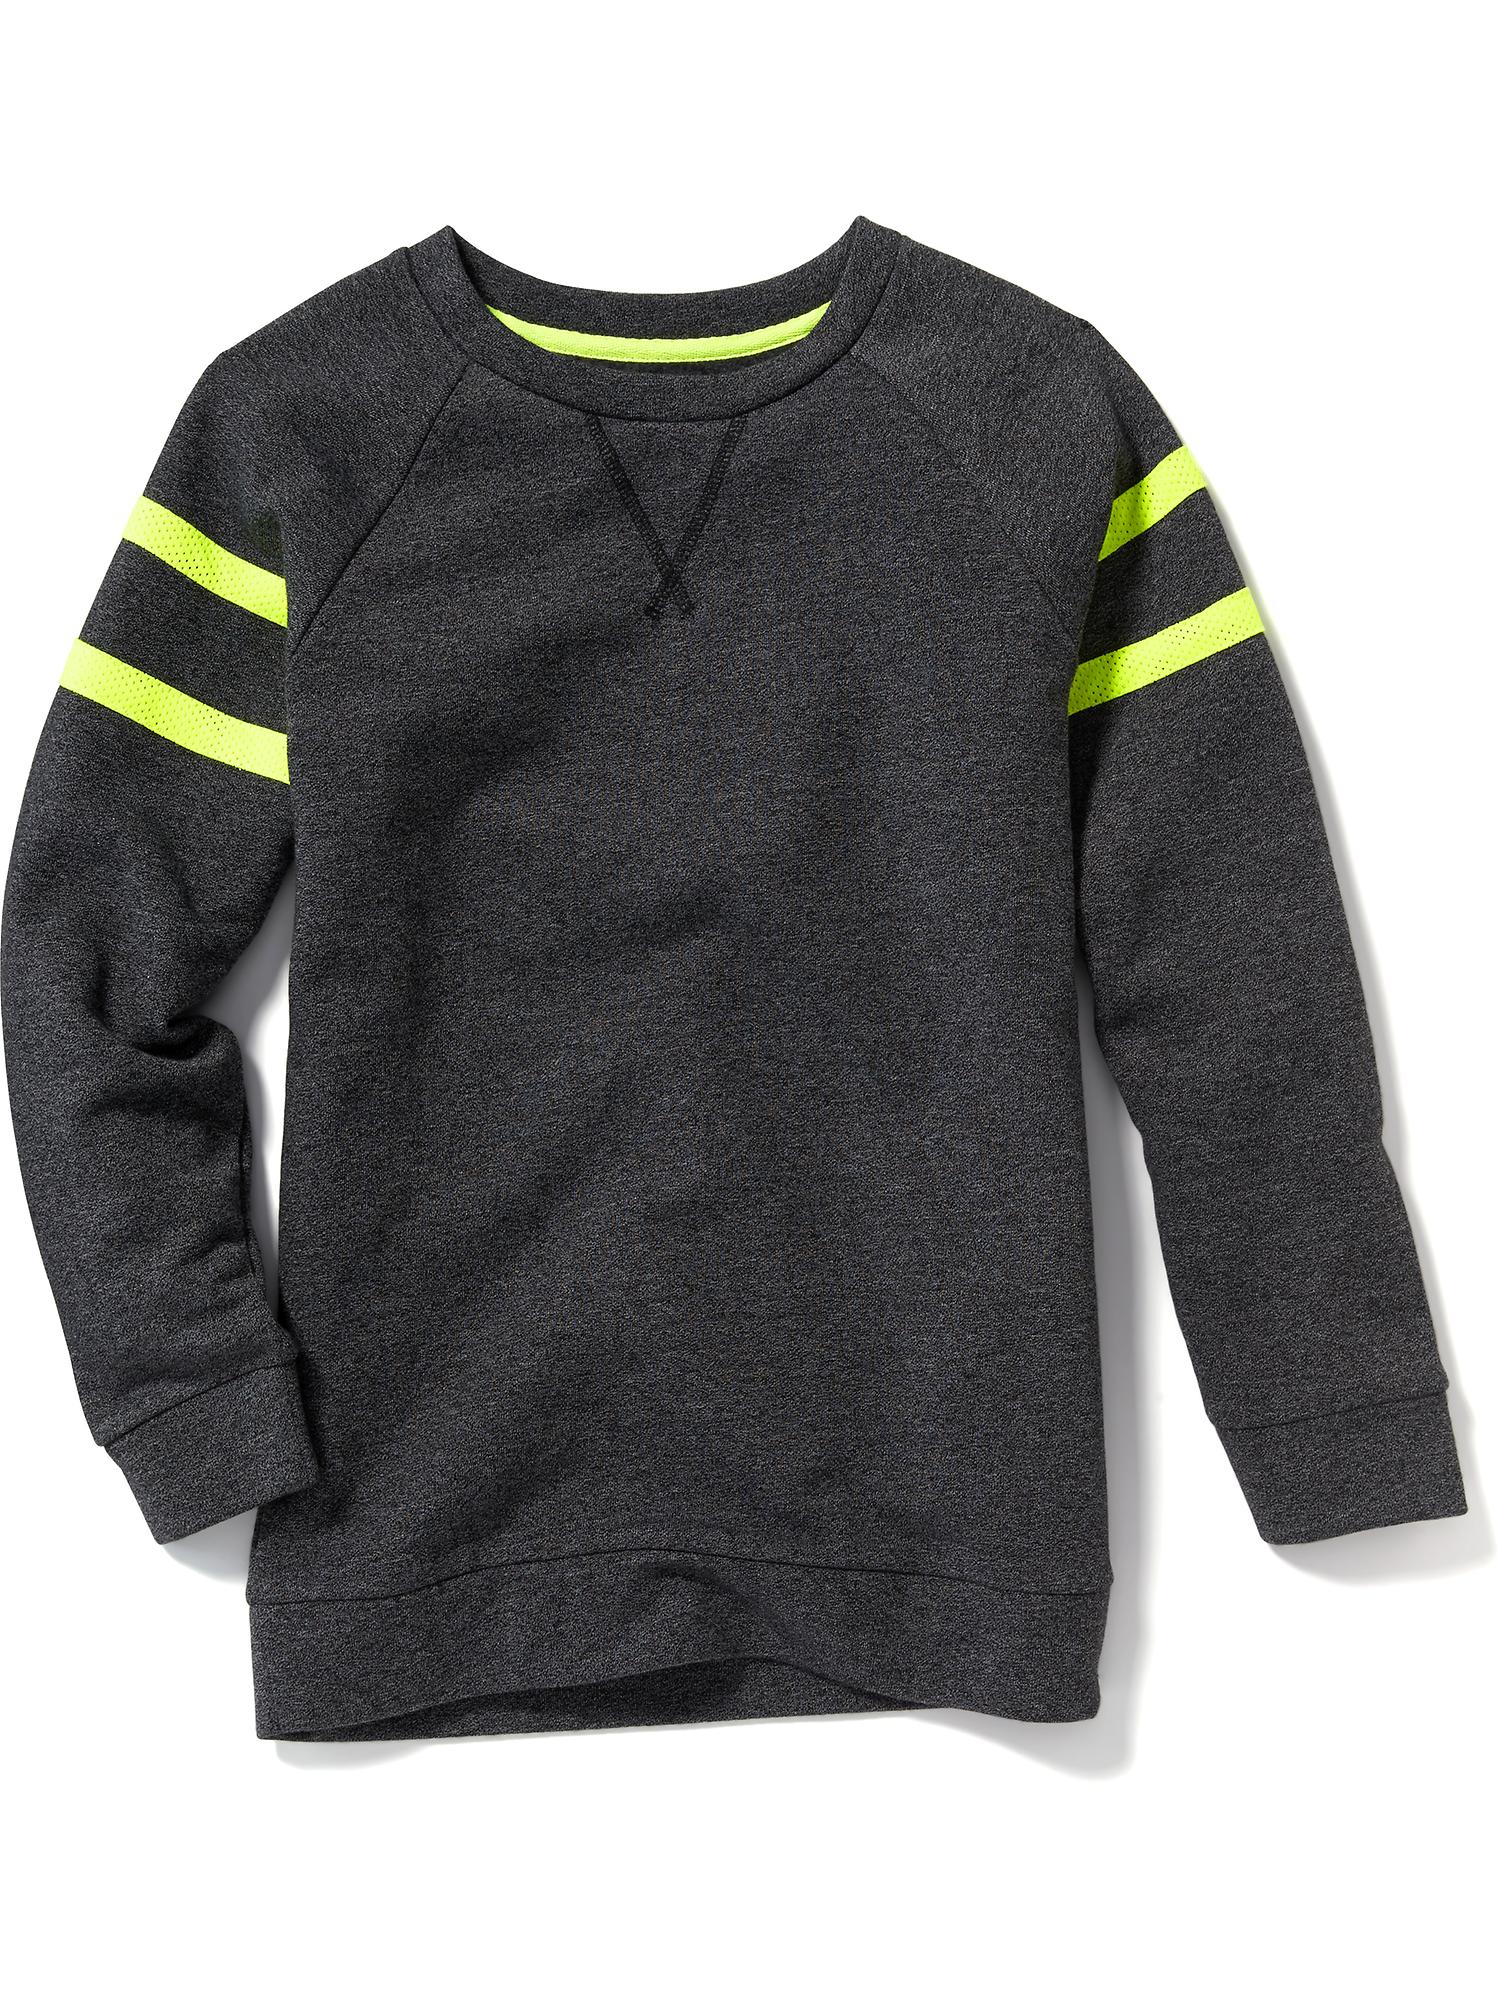 Fleece Sweatshirt for Boys | Old Navy